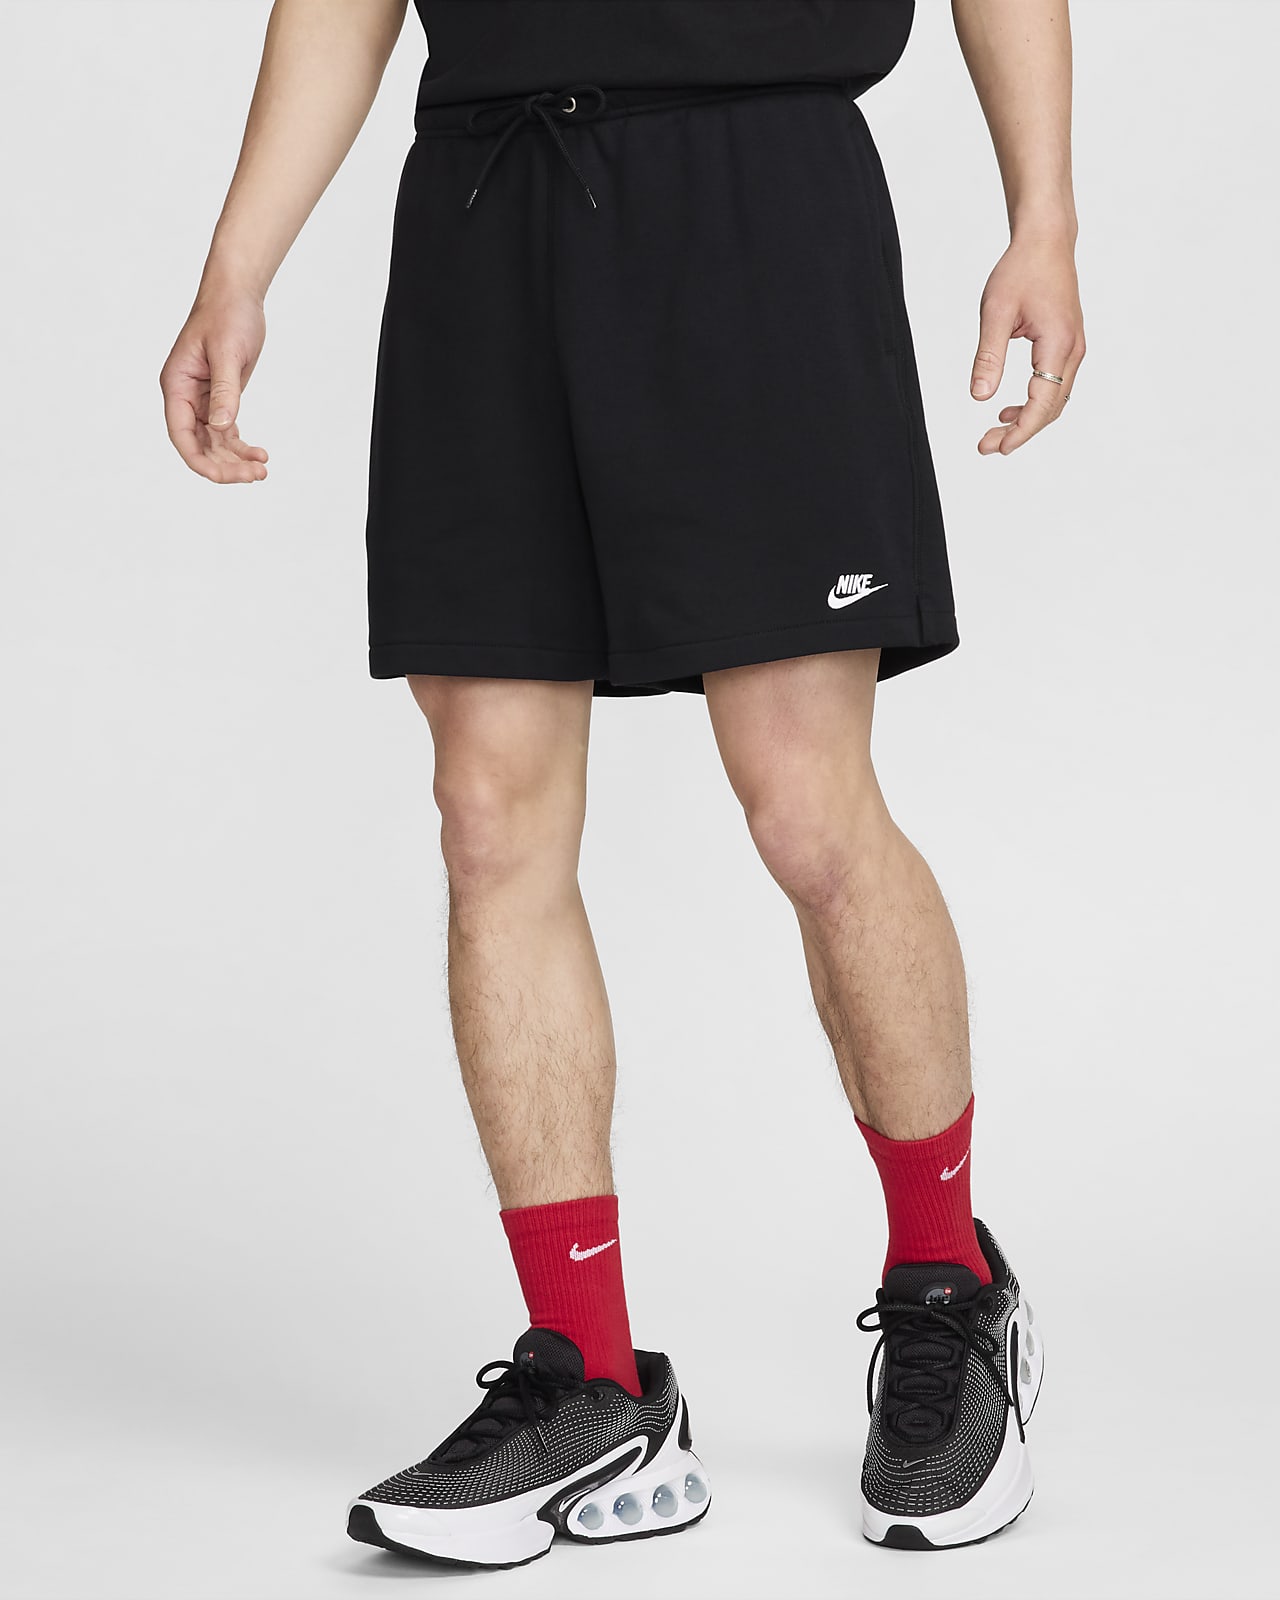 กางเกงขาสั้นผ้าเฟรนช์เทรีผู้ชาย Flow Nike Club